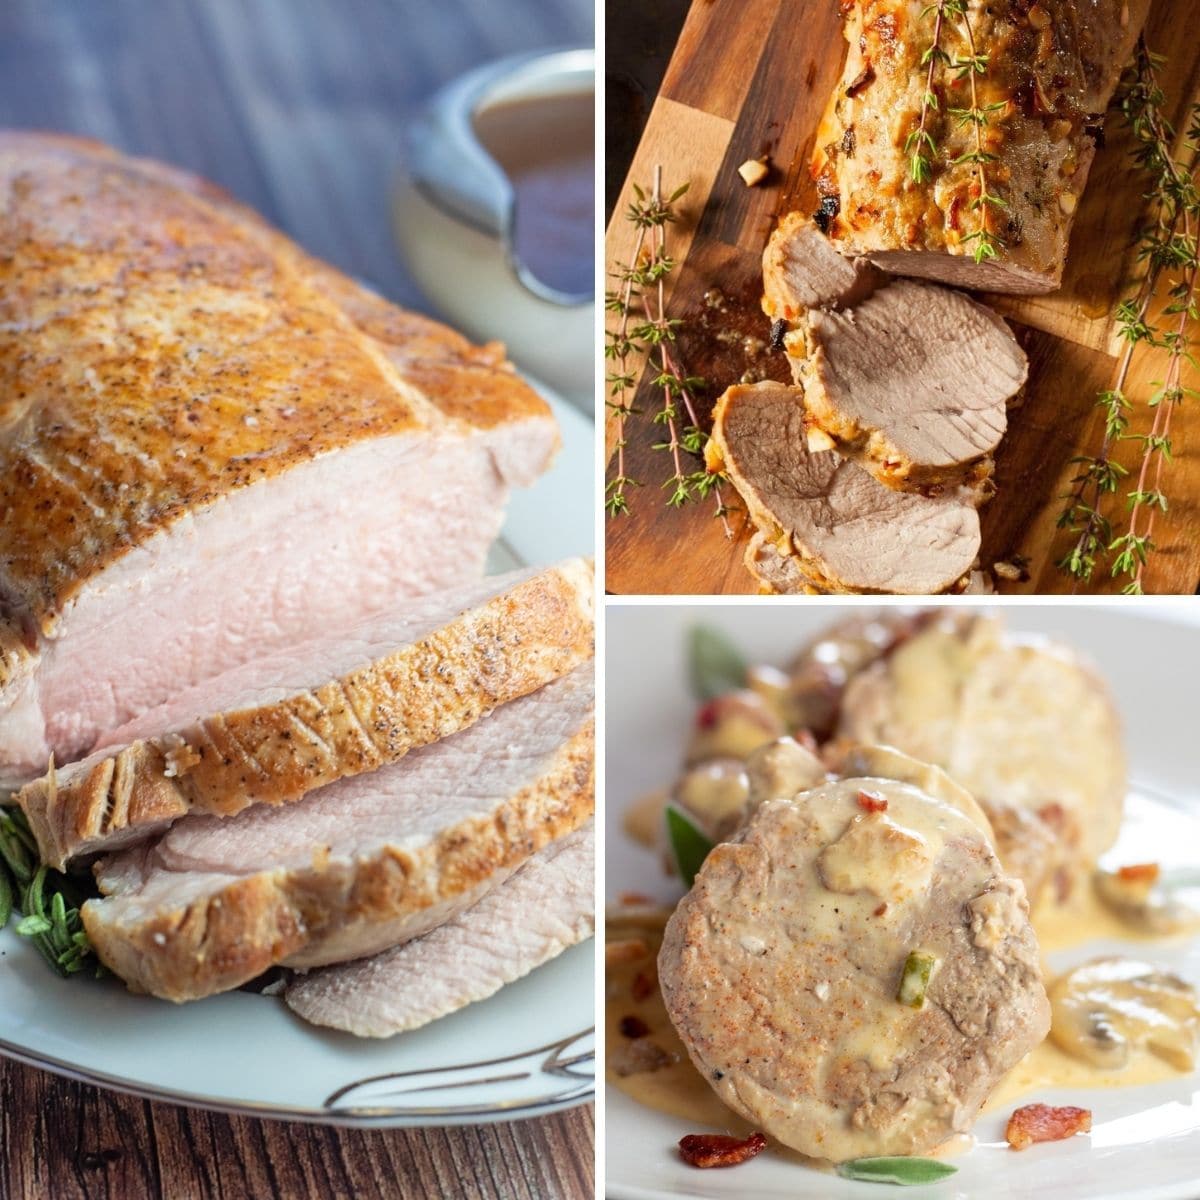 Immagine collage con 3 riquadri di ricette di lonza di maiale e filetto di maiale.